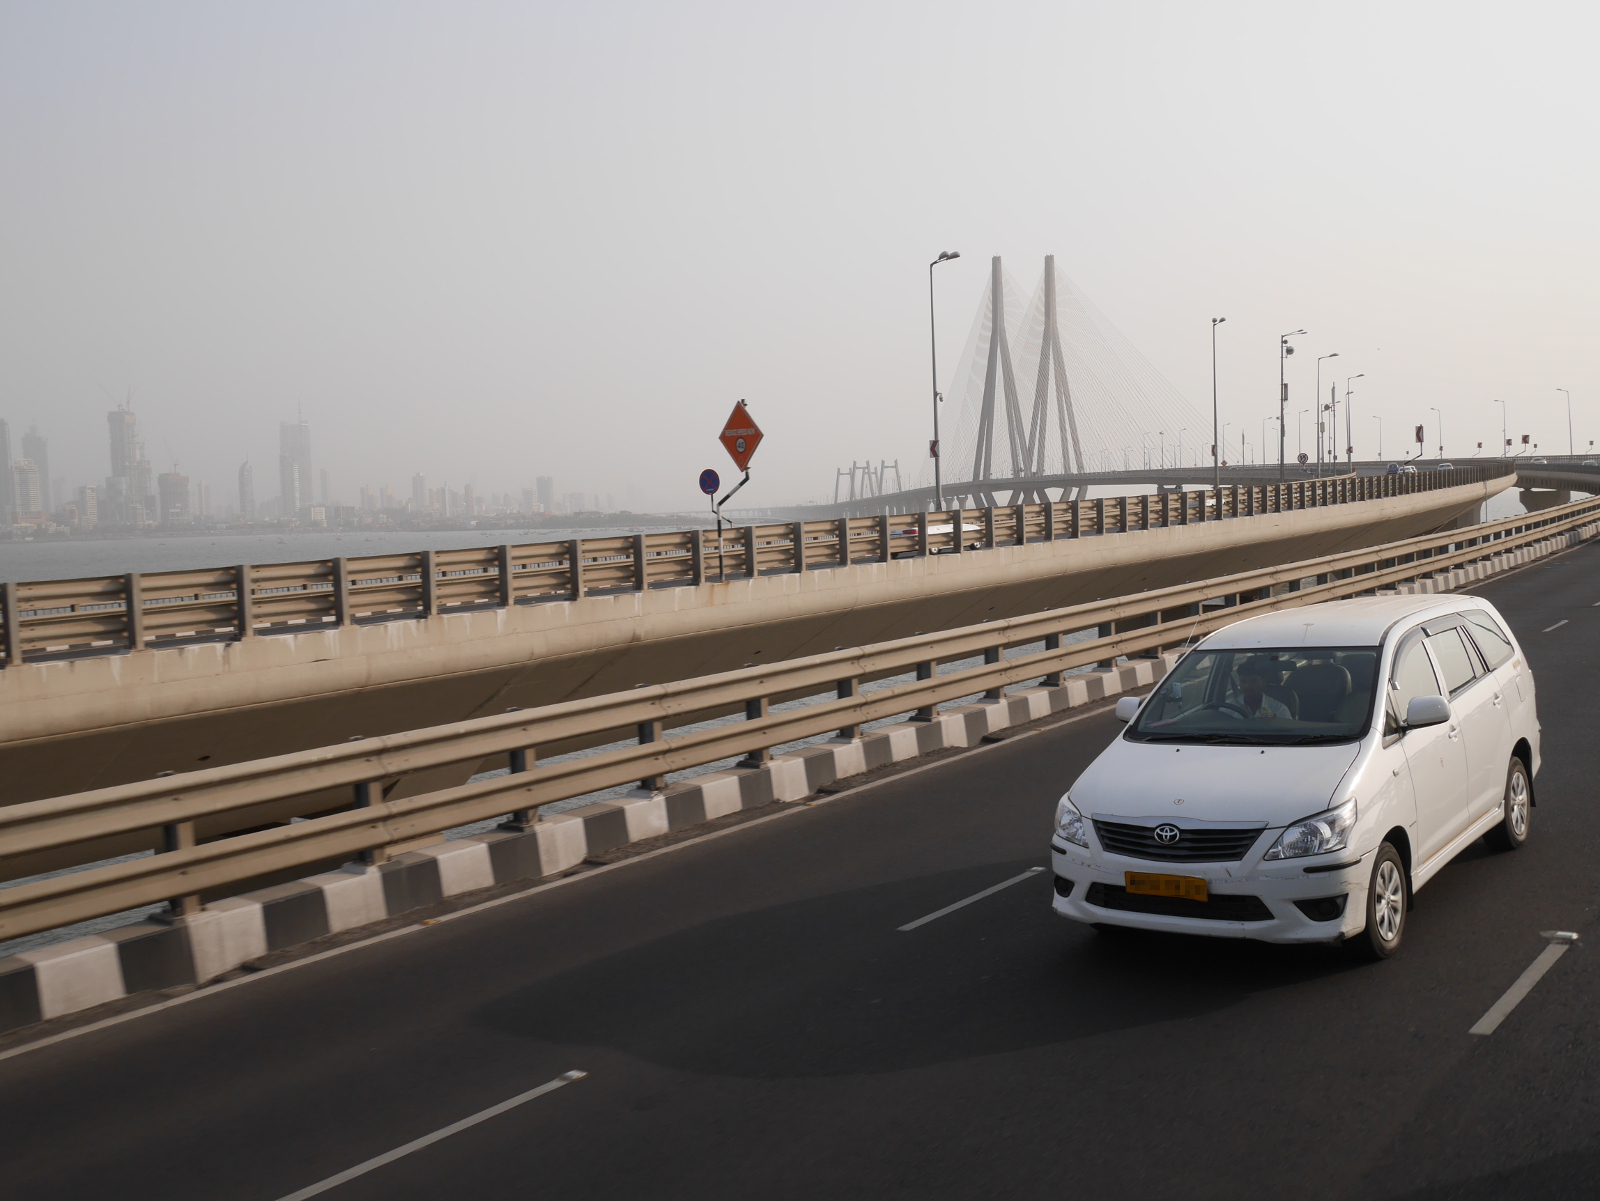 A Toyota Innova crossing the Bandra-Worli Sea Link in Mumbai (Bombay).